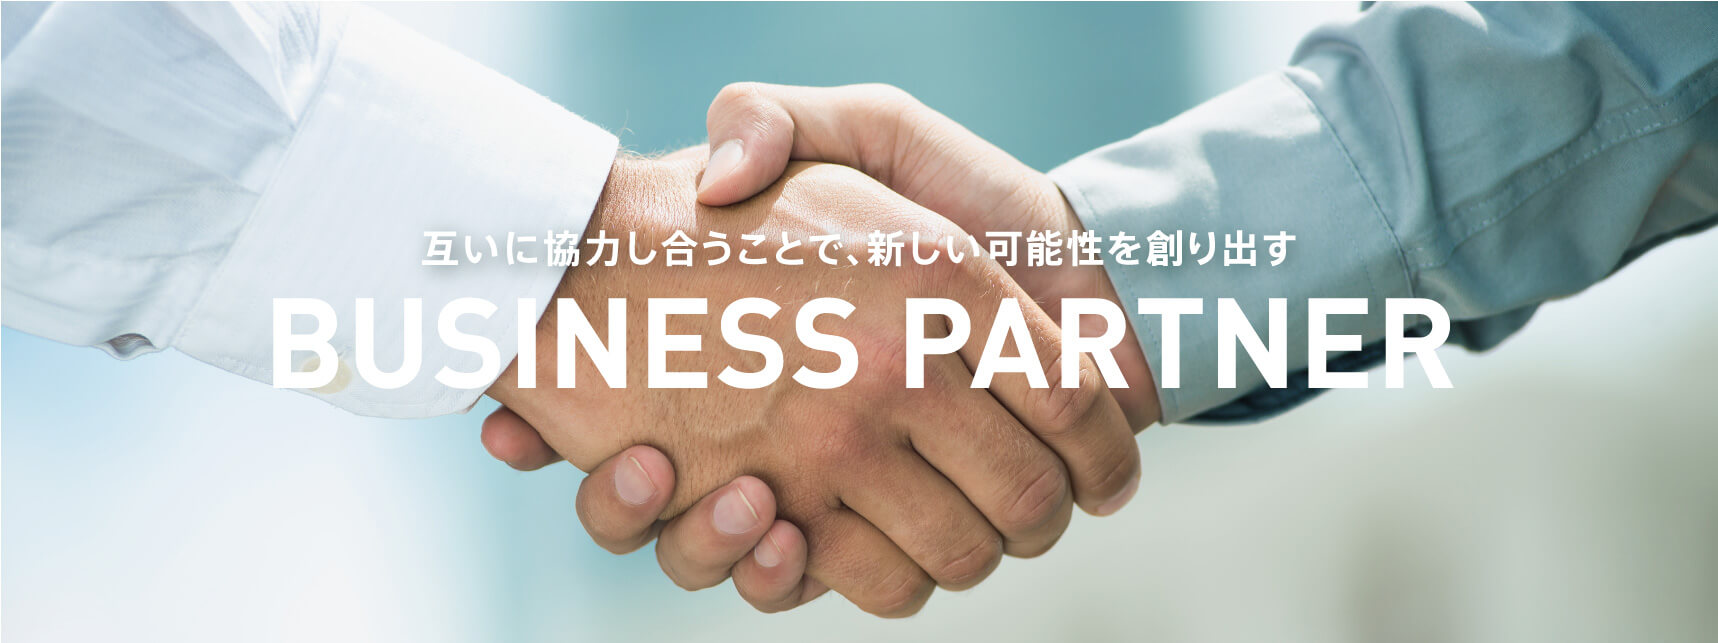 互いに協力し合うことで、新しい可能性を創り出す BUSINESS PARTNER